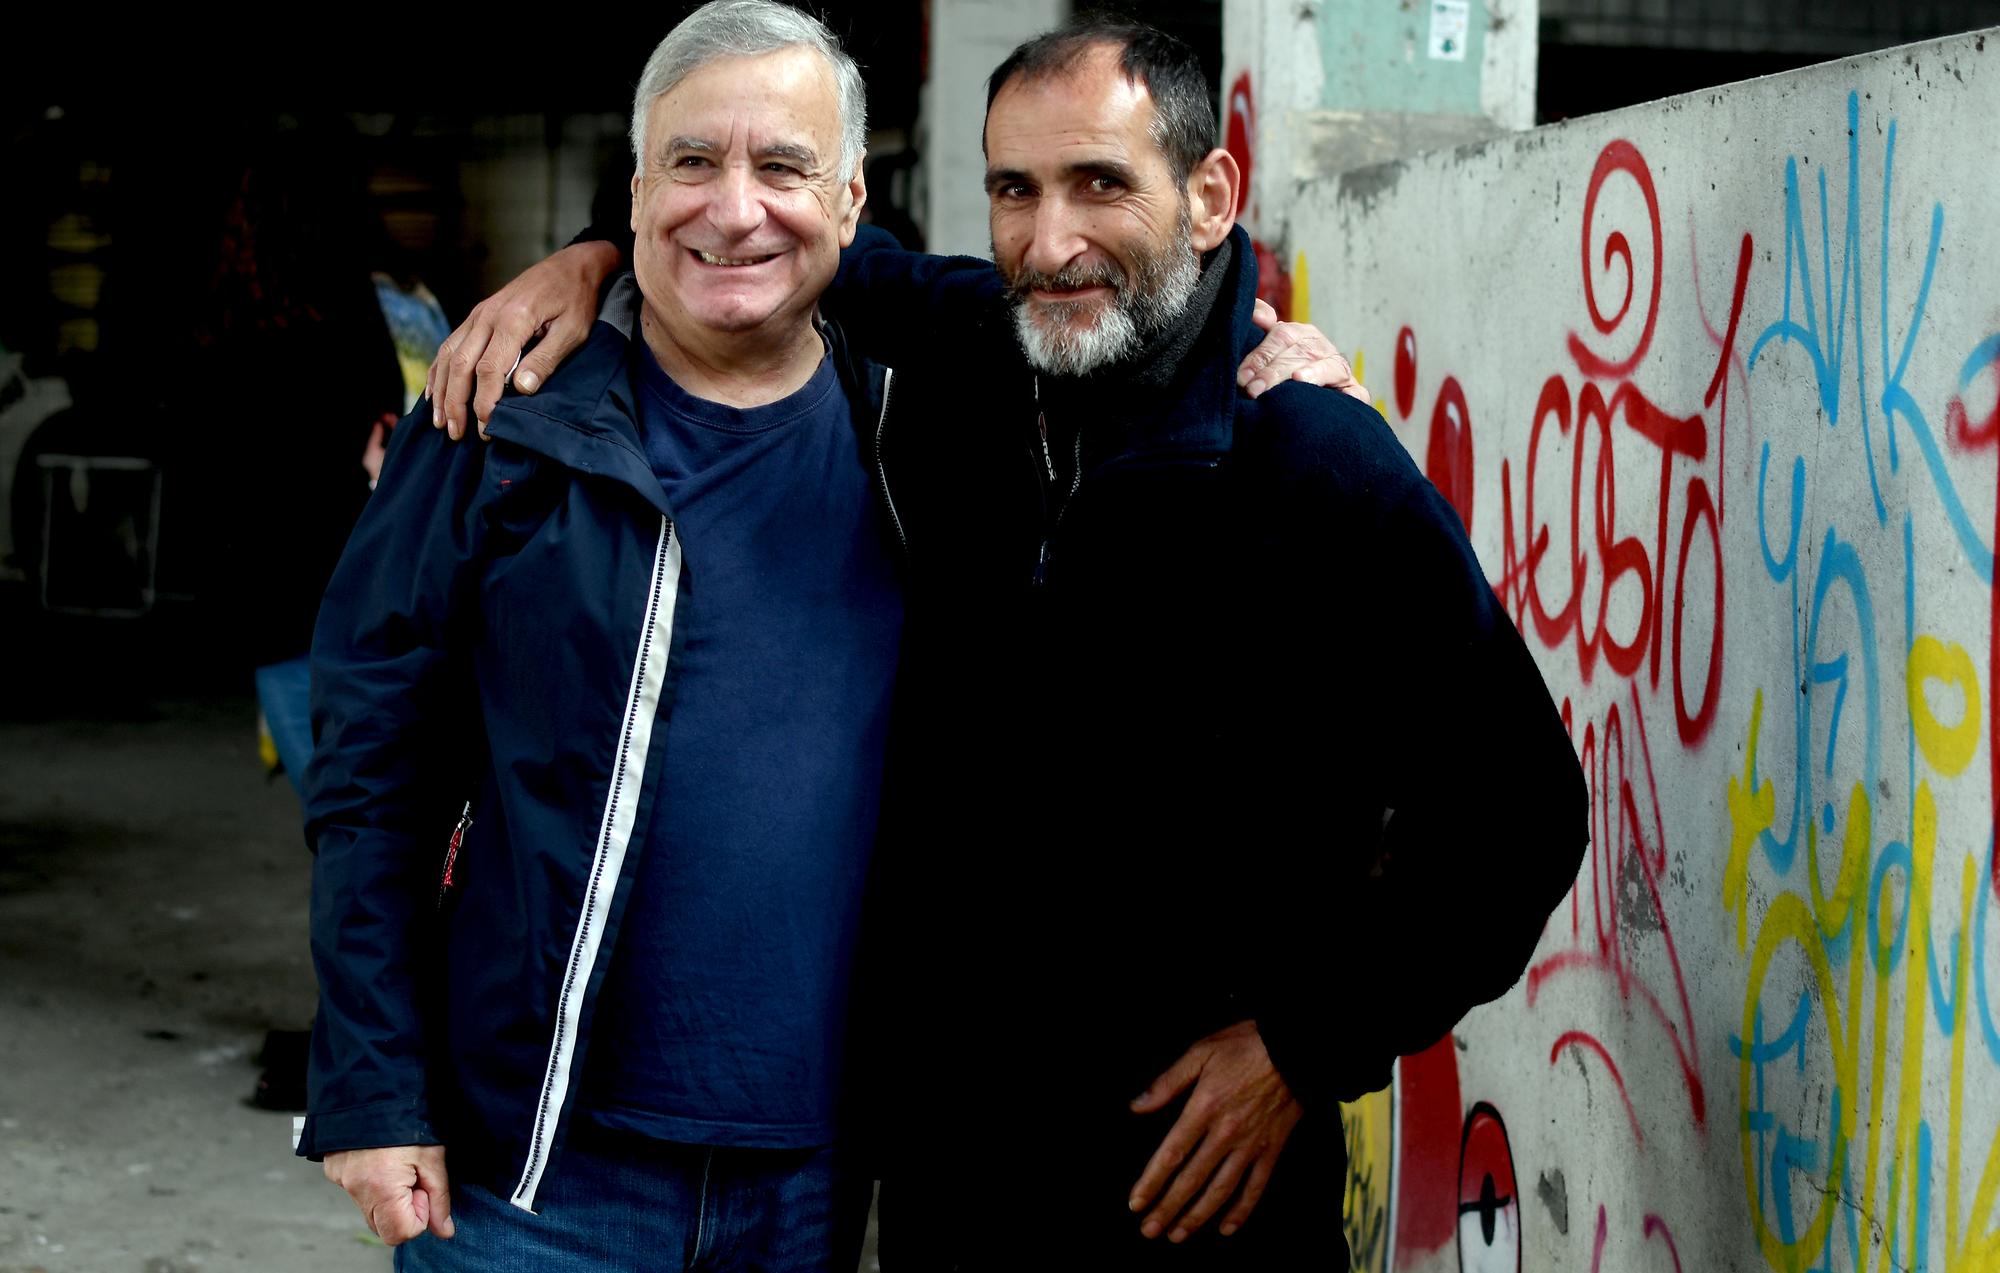 Antón Bouza (esquerda) xunto a Javier Romero, unha persoa sen fogar